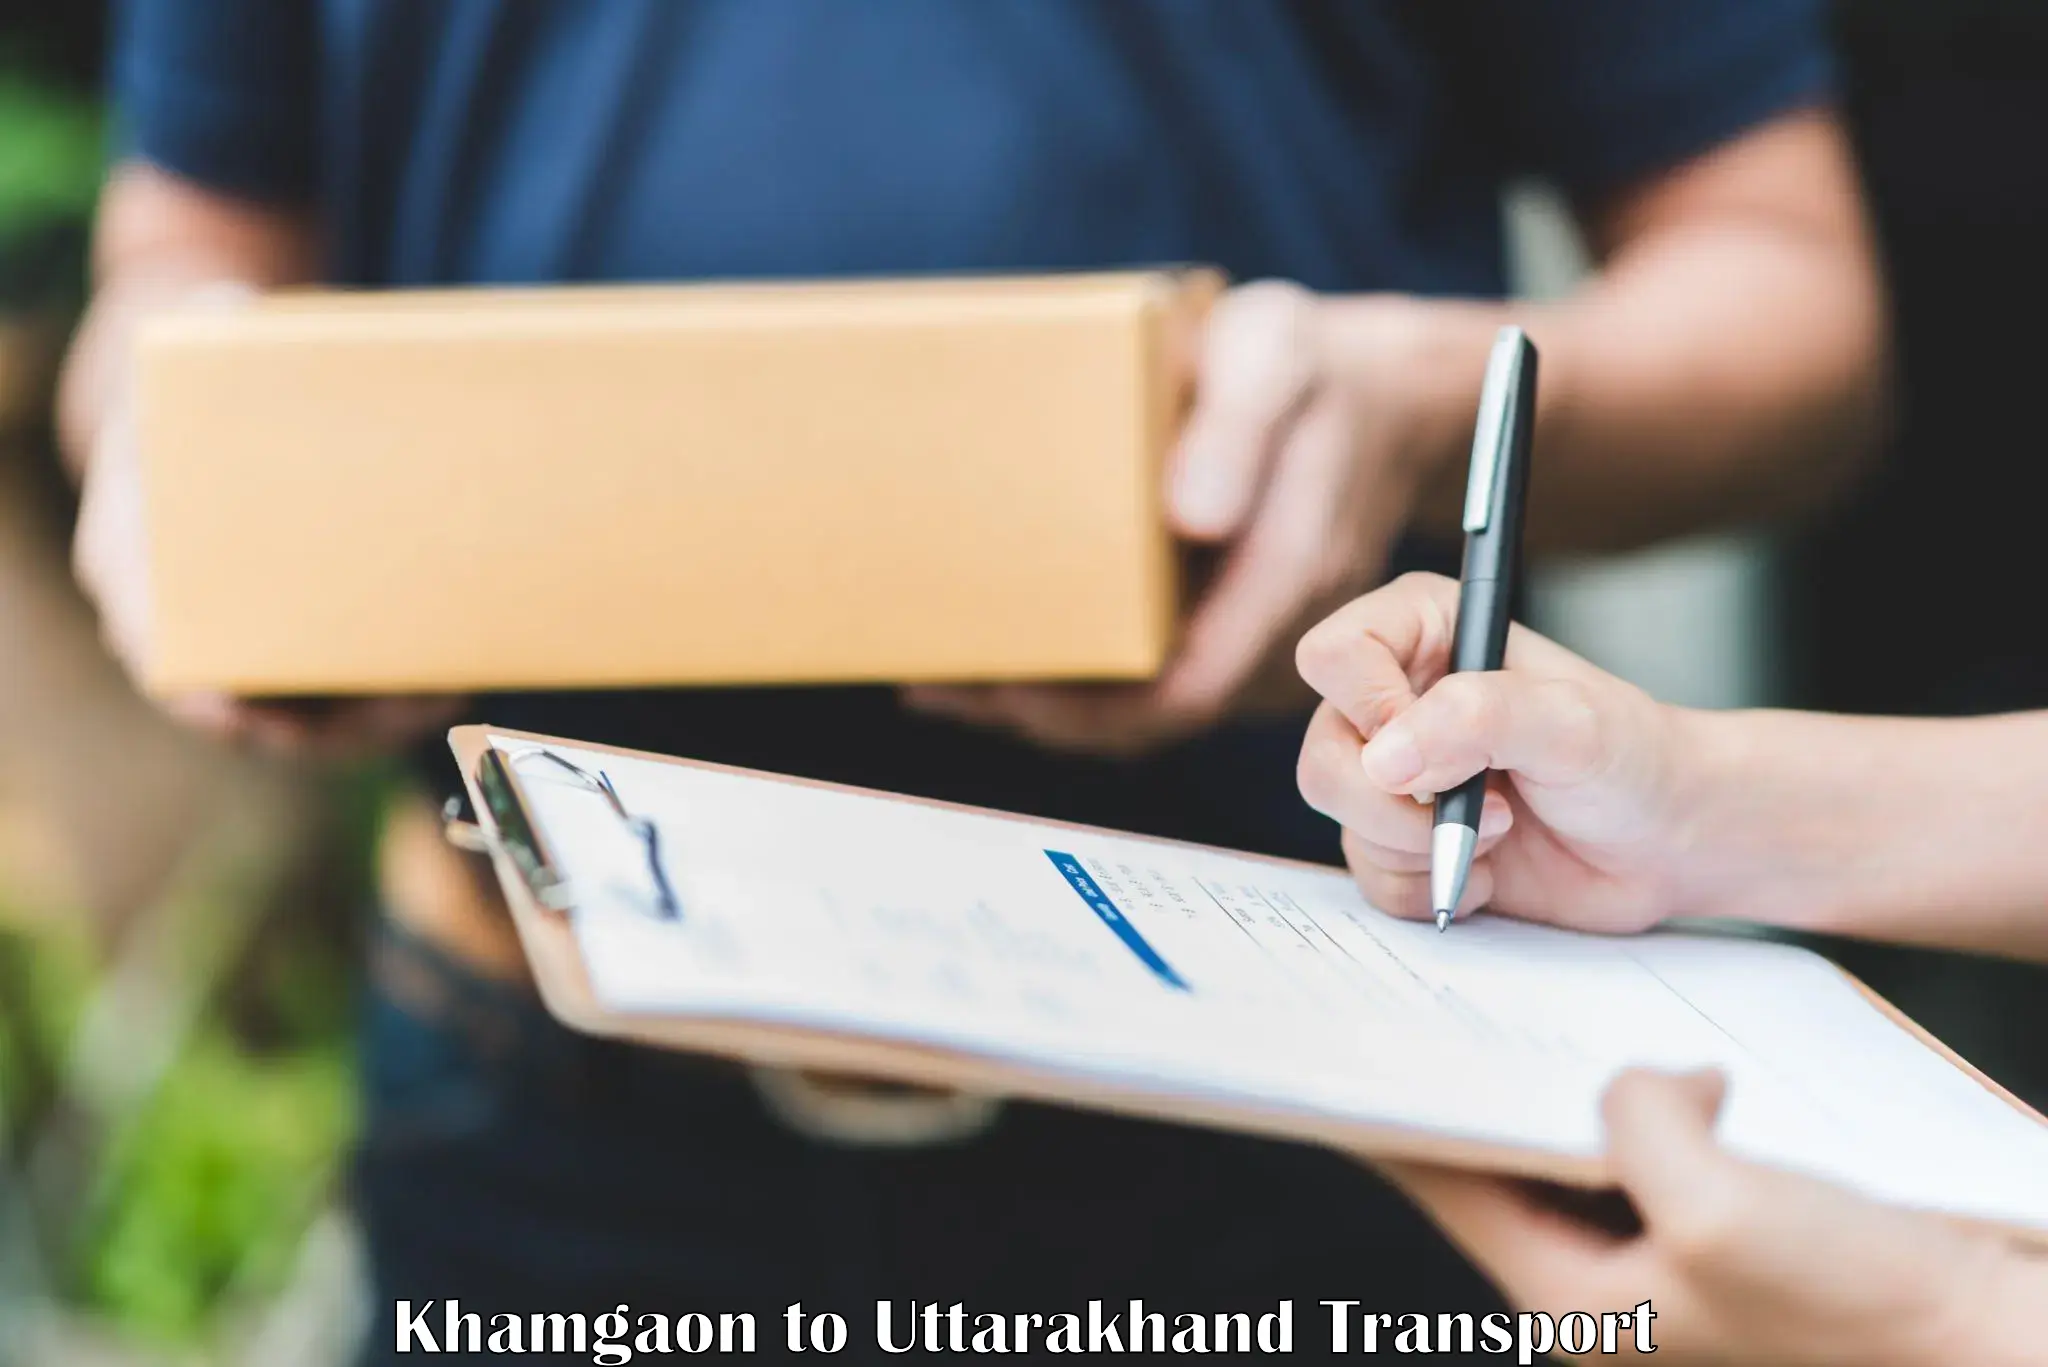 Online transport service Khamgaon to Uttarakhand